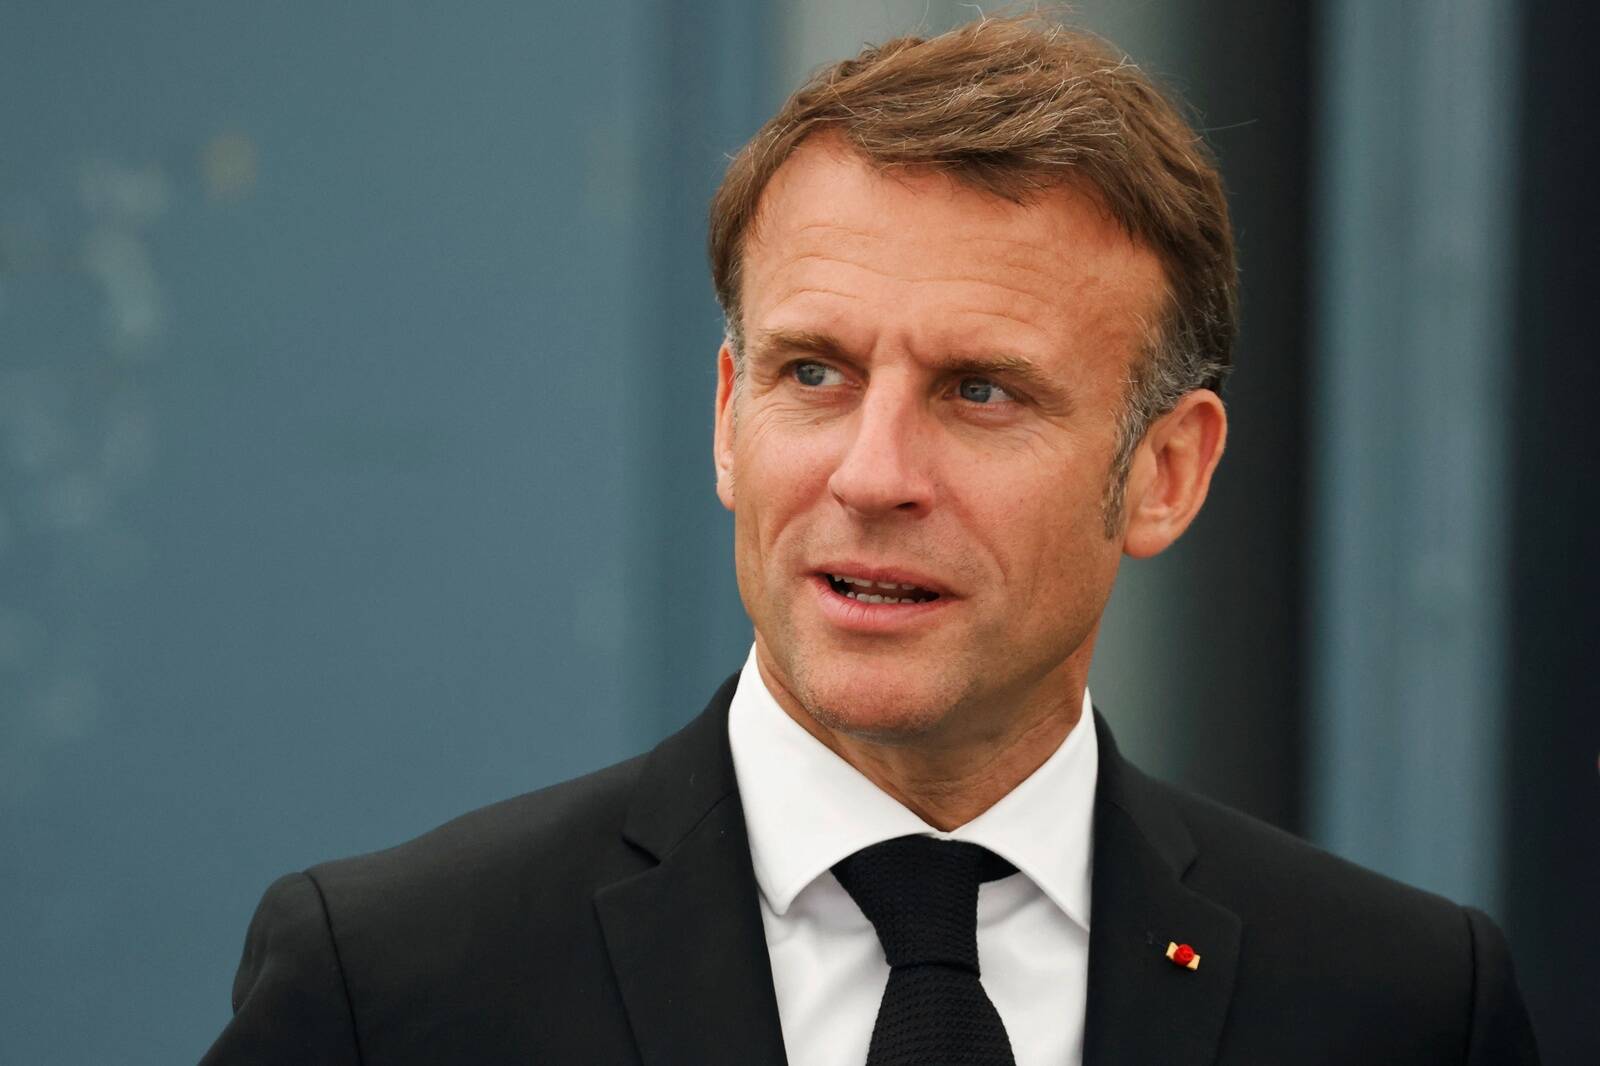 Prantsusmaa sisepoliitika eriti välispoliitikat ei mõjuta, arvas Prantsuse asjatundja Vootele Päi. Fotol Prantsusmaa president Emmanuel Macron.